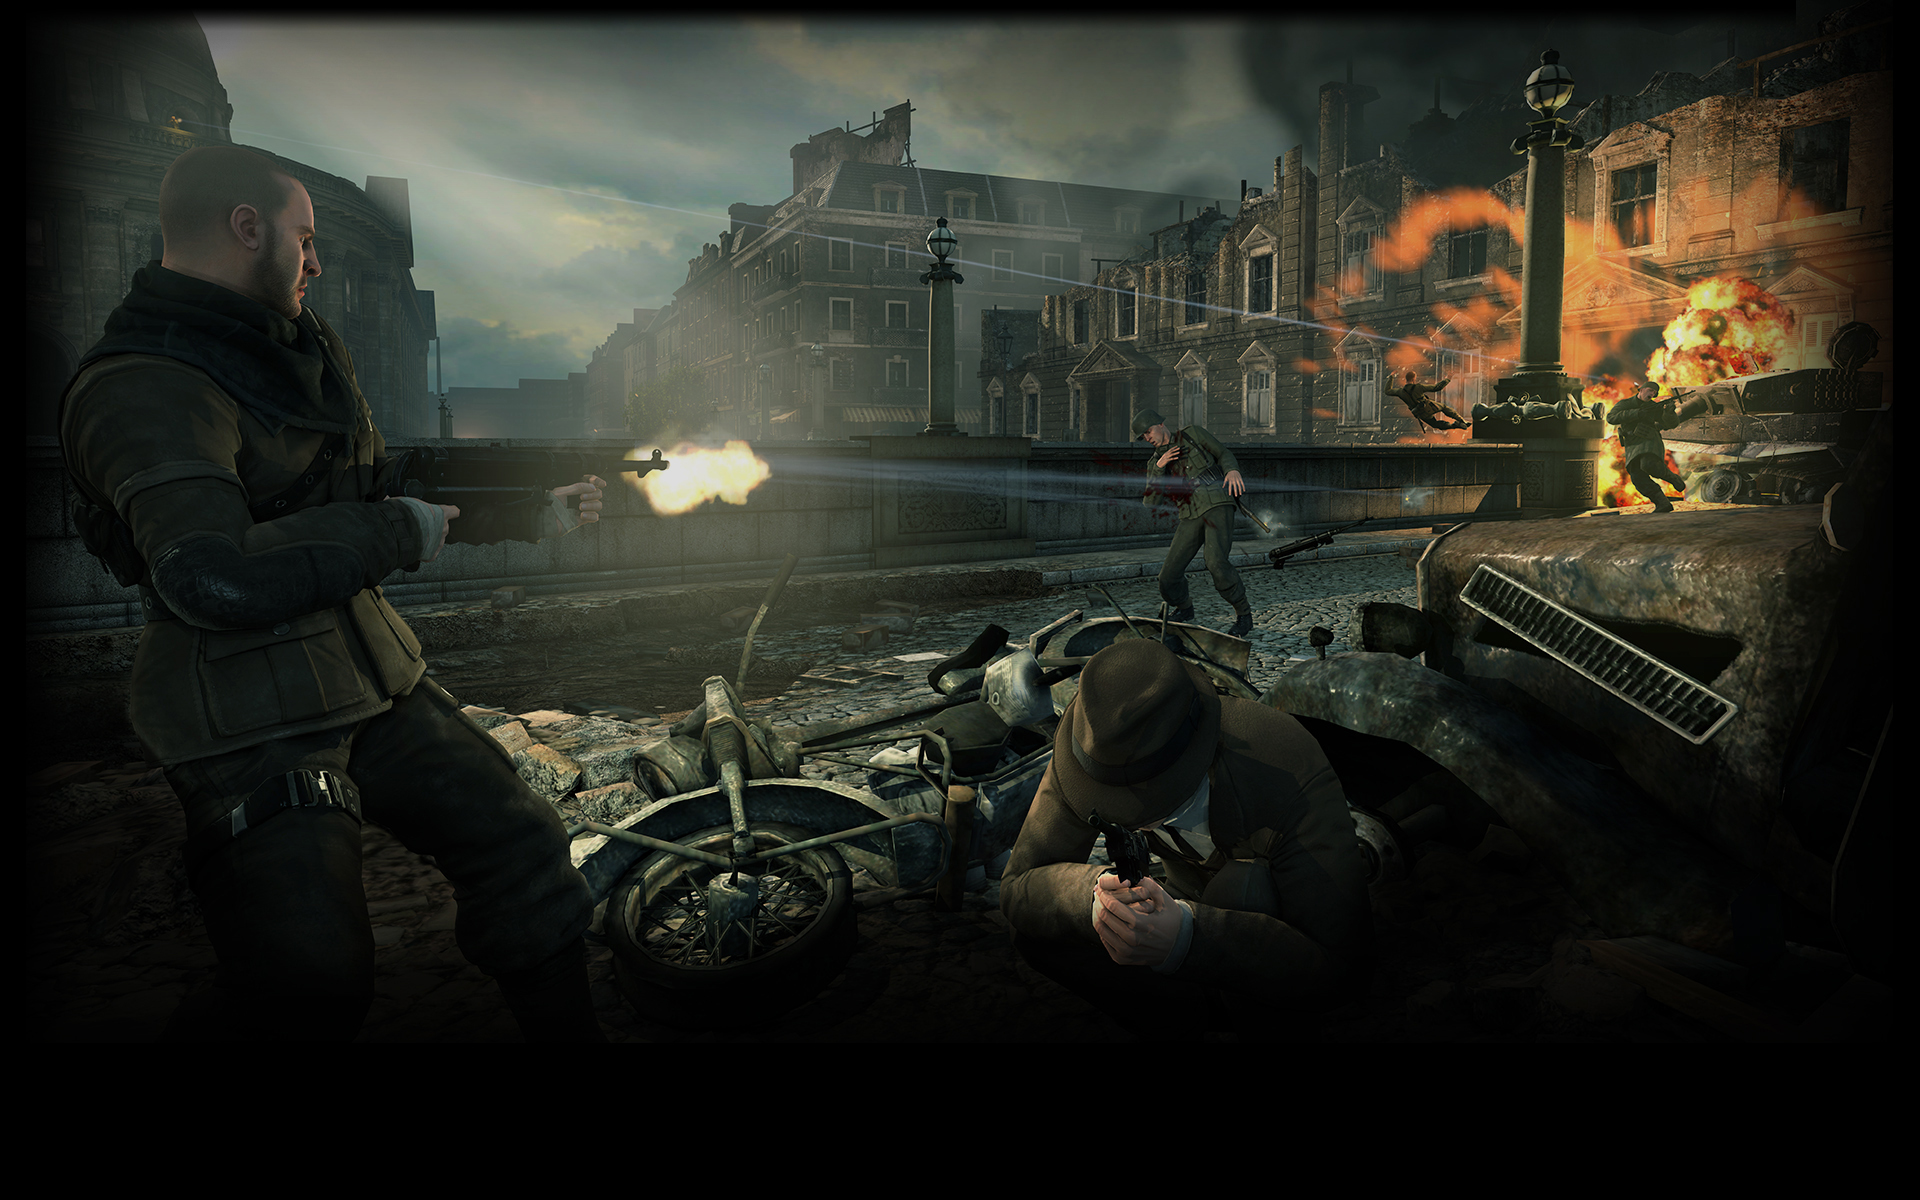 Video Game Sniper Elite V2 HD Wallpaper | Background Image